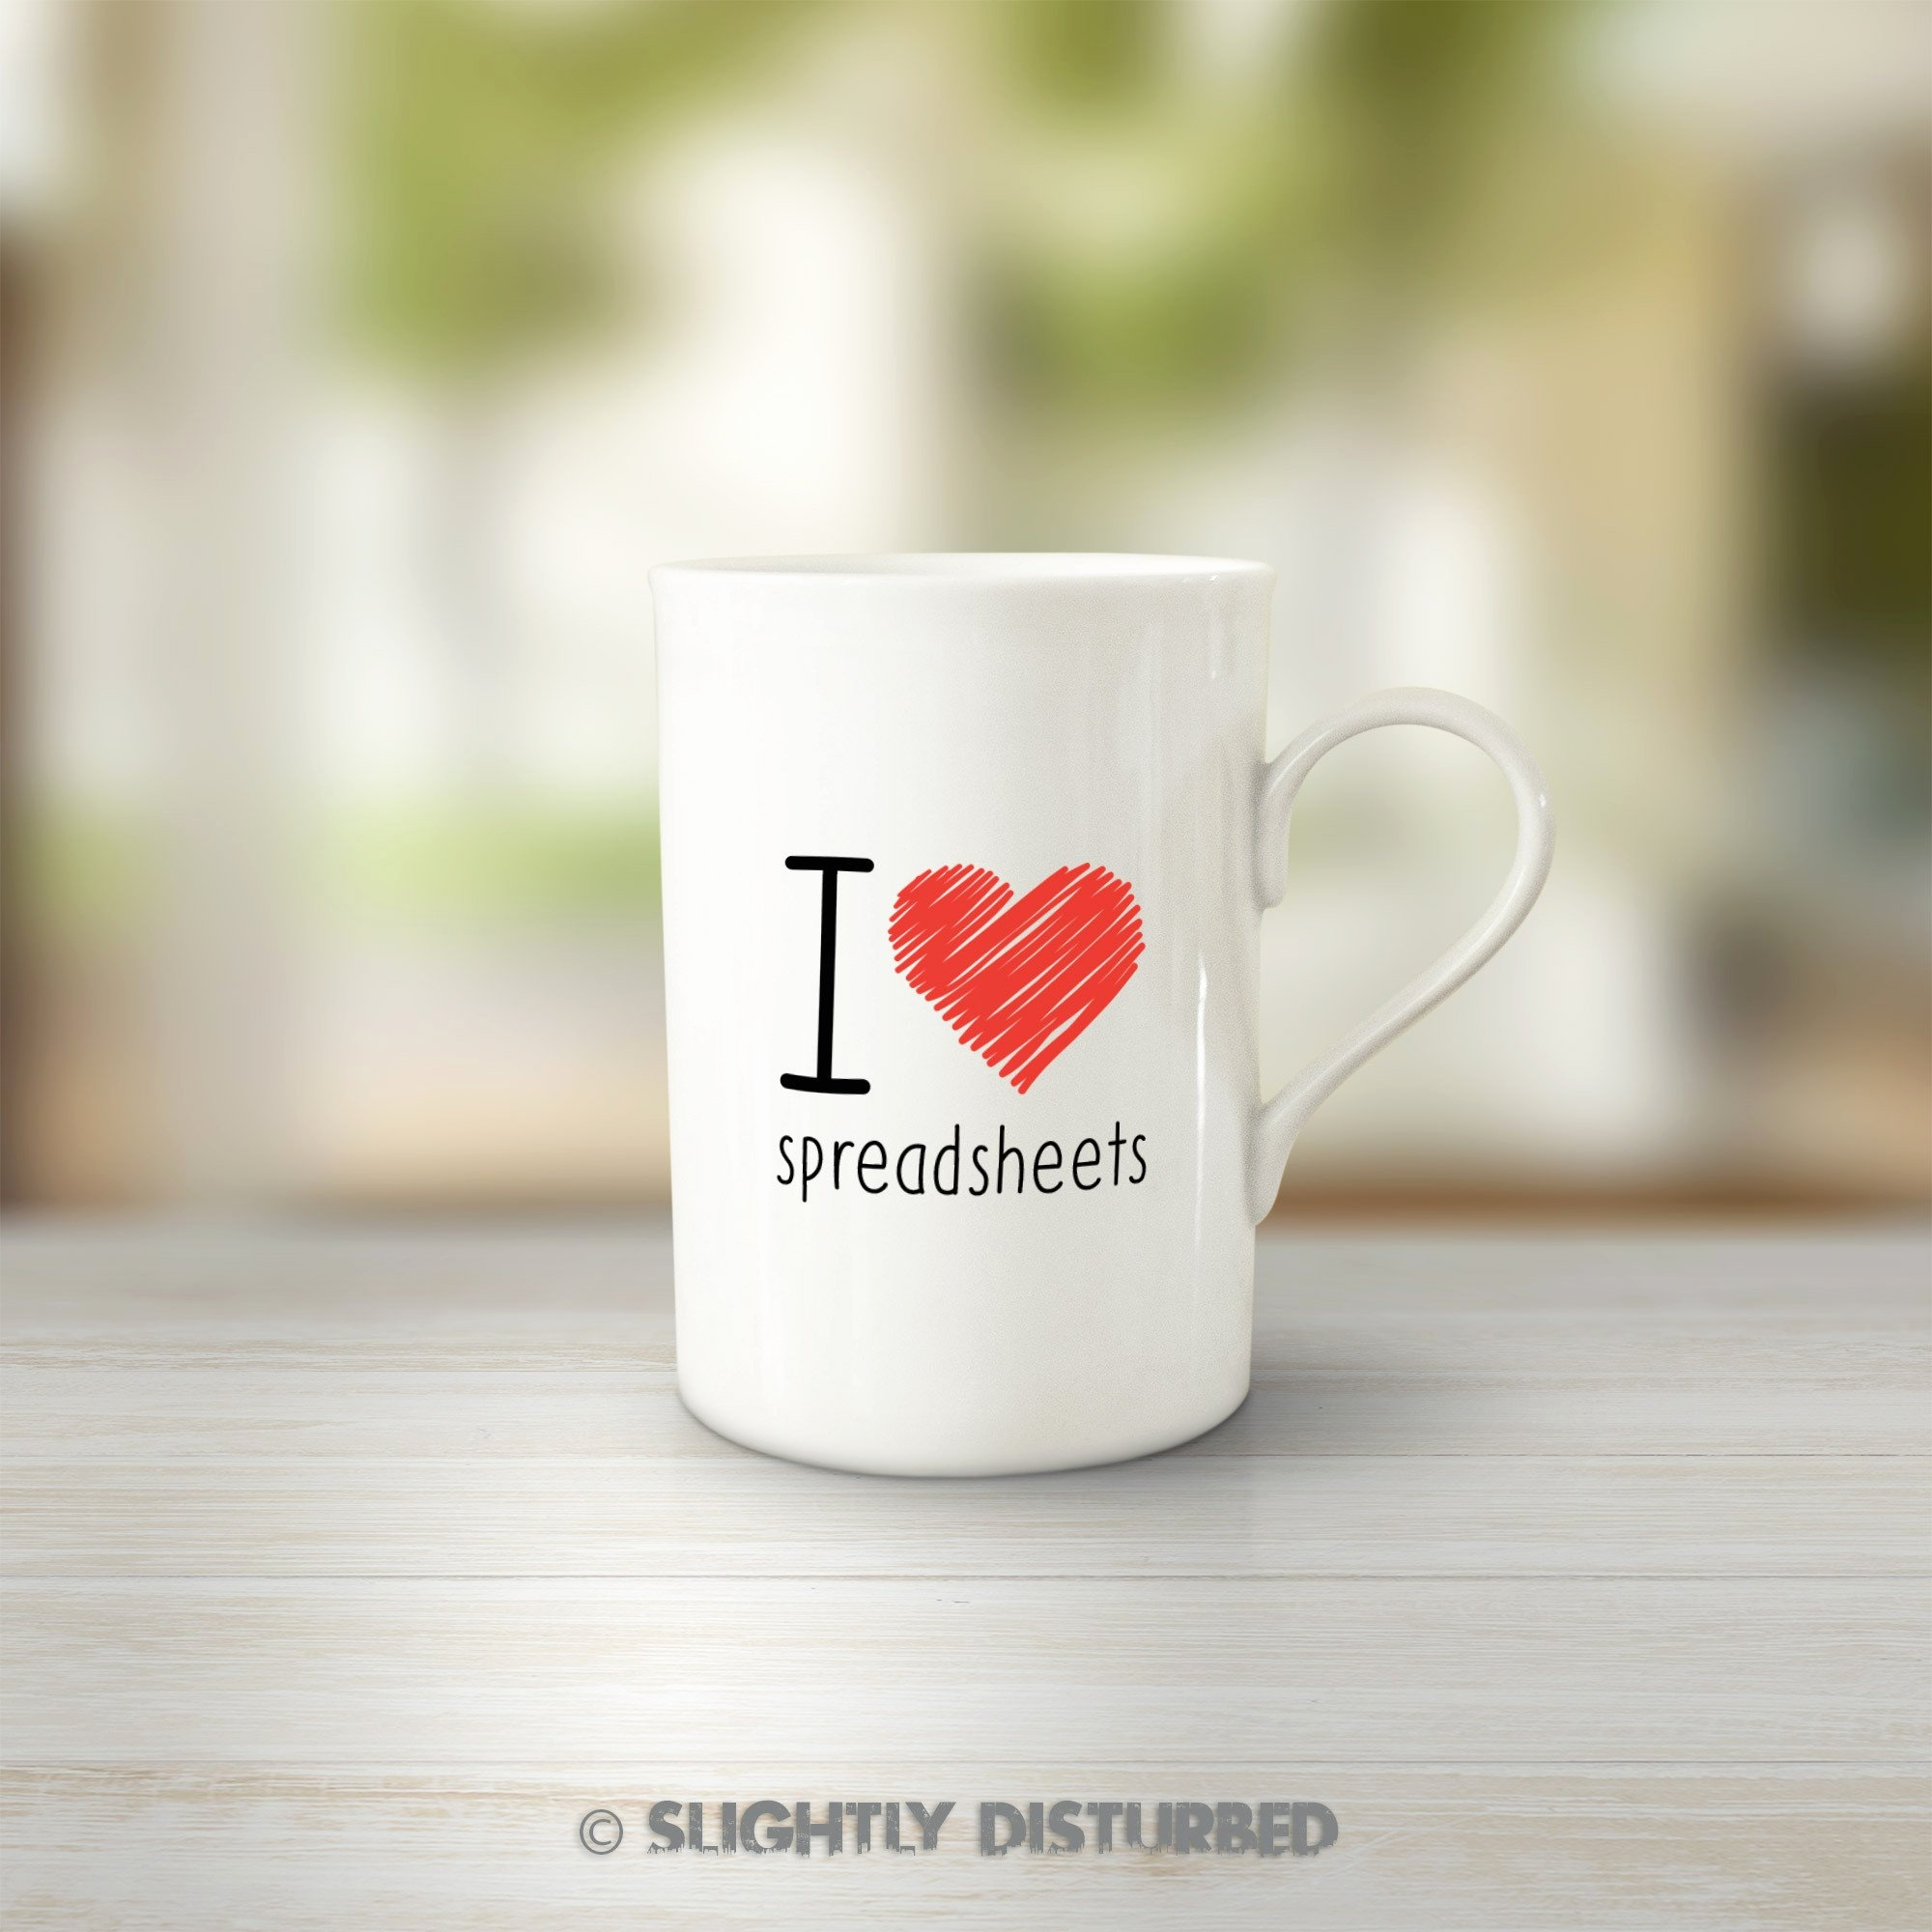 I Love Spreadsheets Mug Debenhams With I Heart Spreadsheets Mug Unique I Love Spreadsheets Mug Novelty Mugs